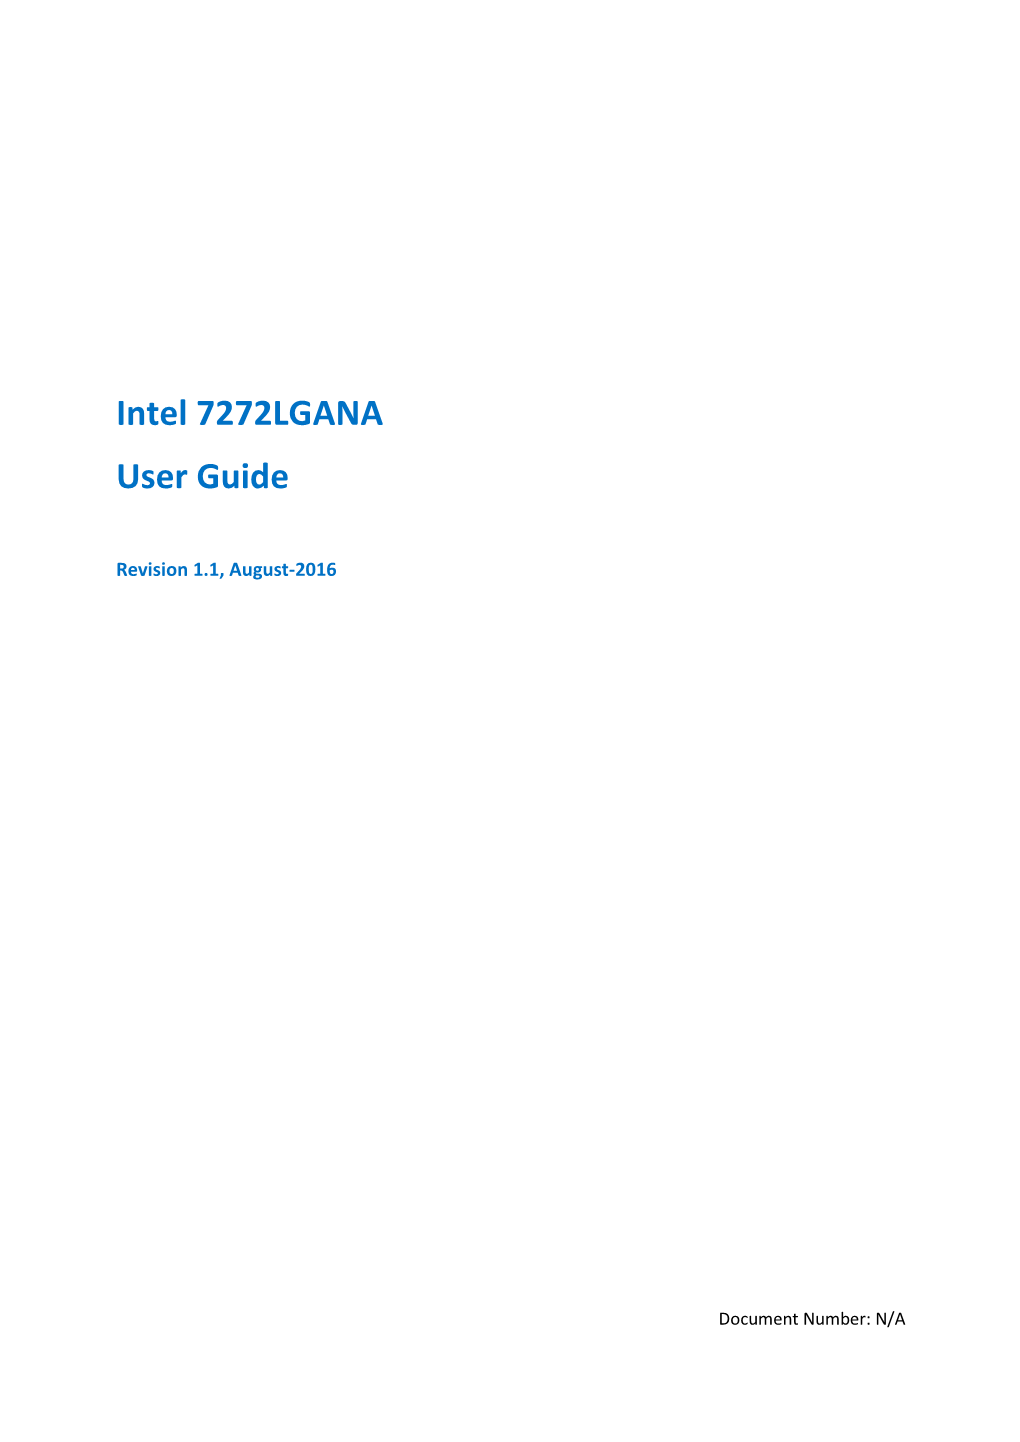 Intel 7272LGANA User Guide